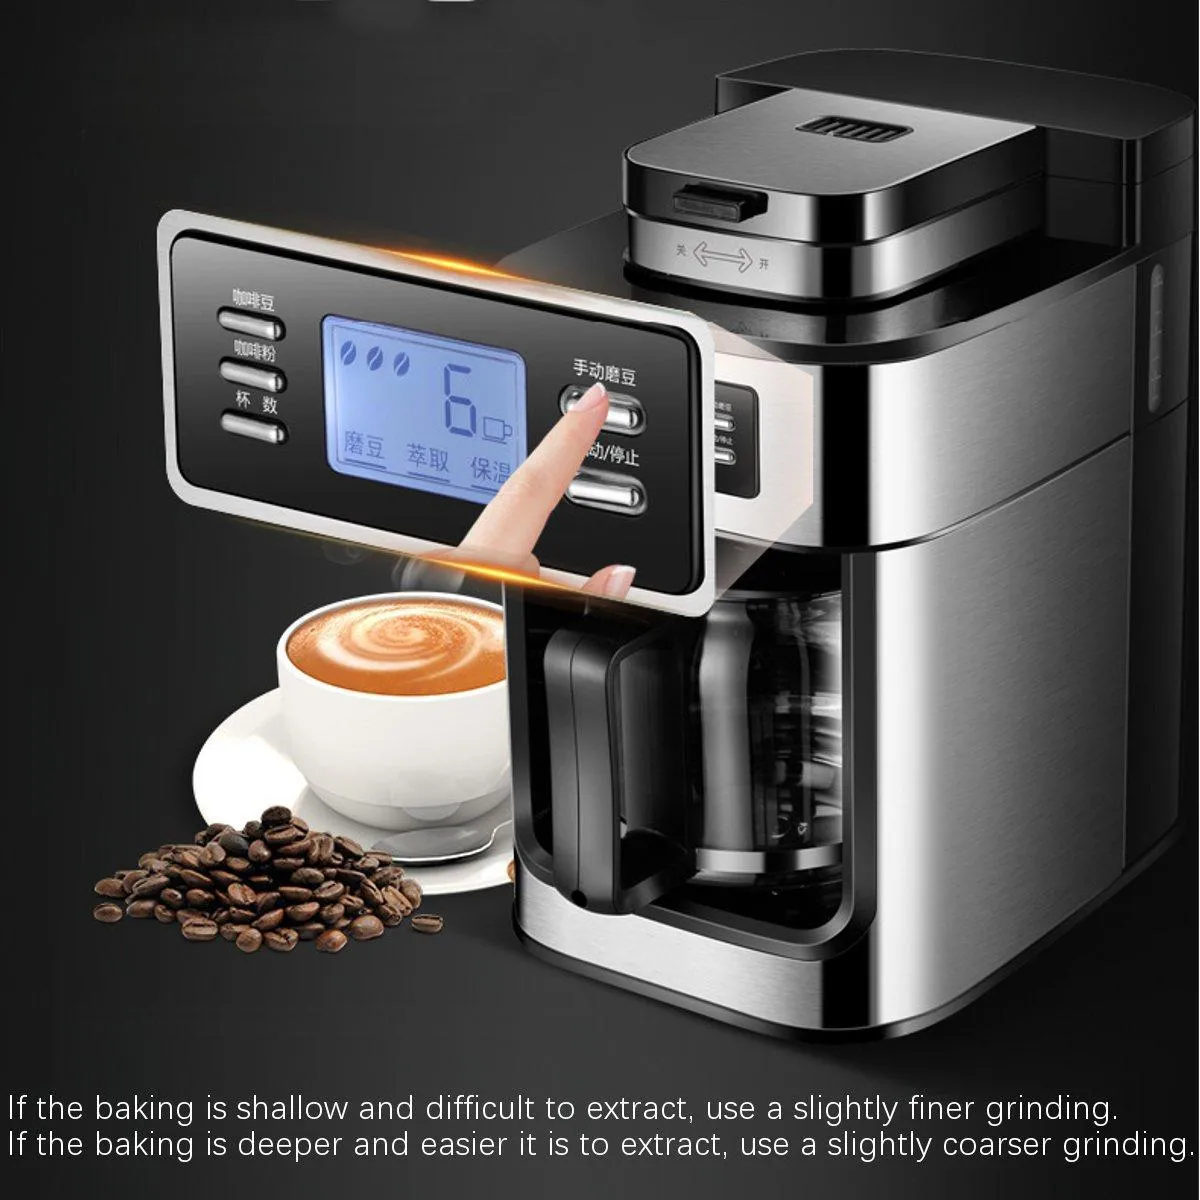 100% Nowa marka Elektryczna ekspres do kawy Gospodarstwa domowego w pełni automatyczny ekspres do kawy 1200ml Herbata Do Pożartu Kawiarnia Home Kitchen Appliance 220V